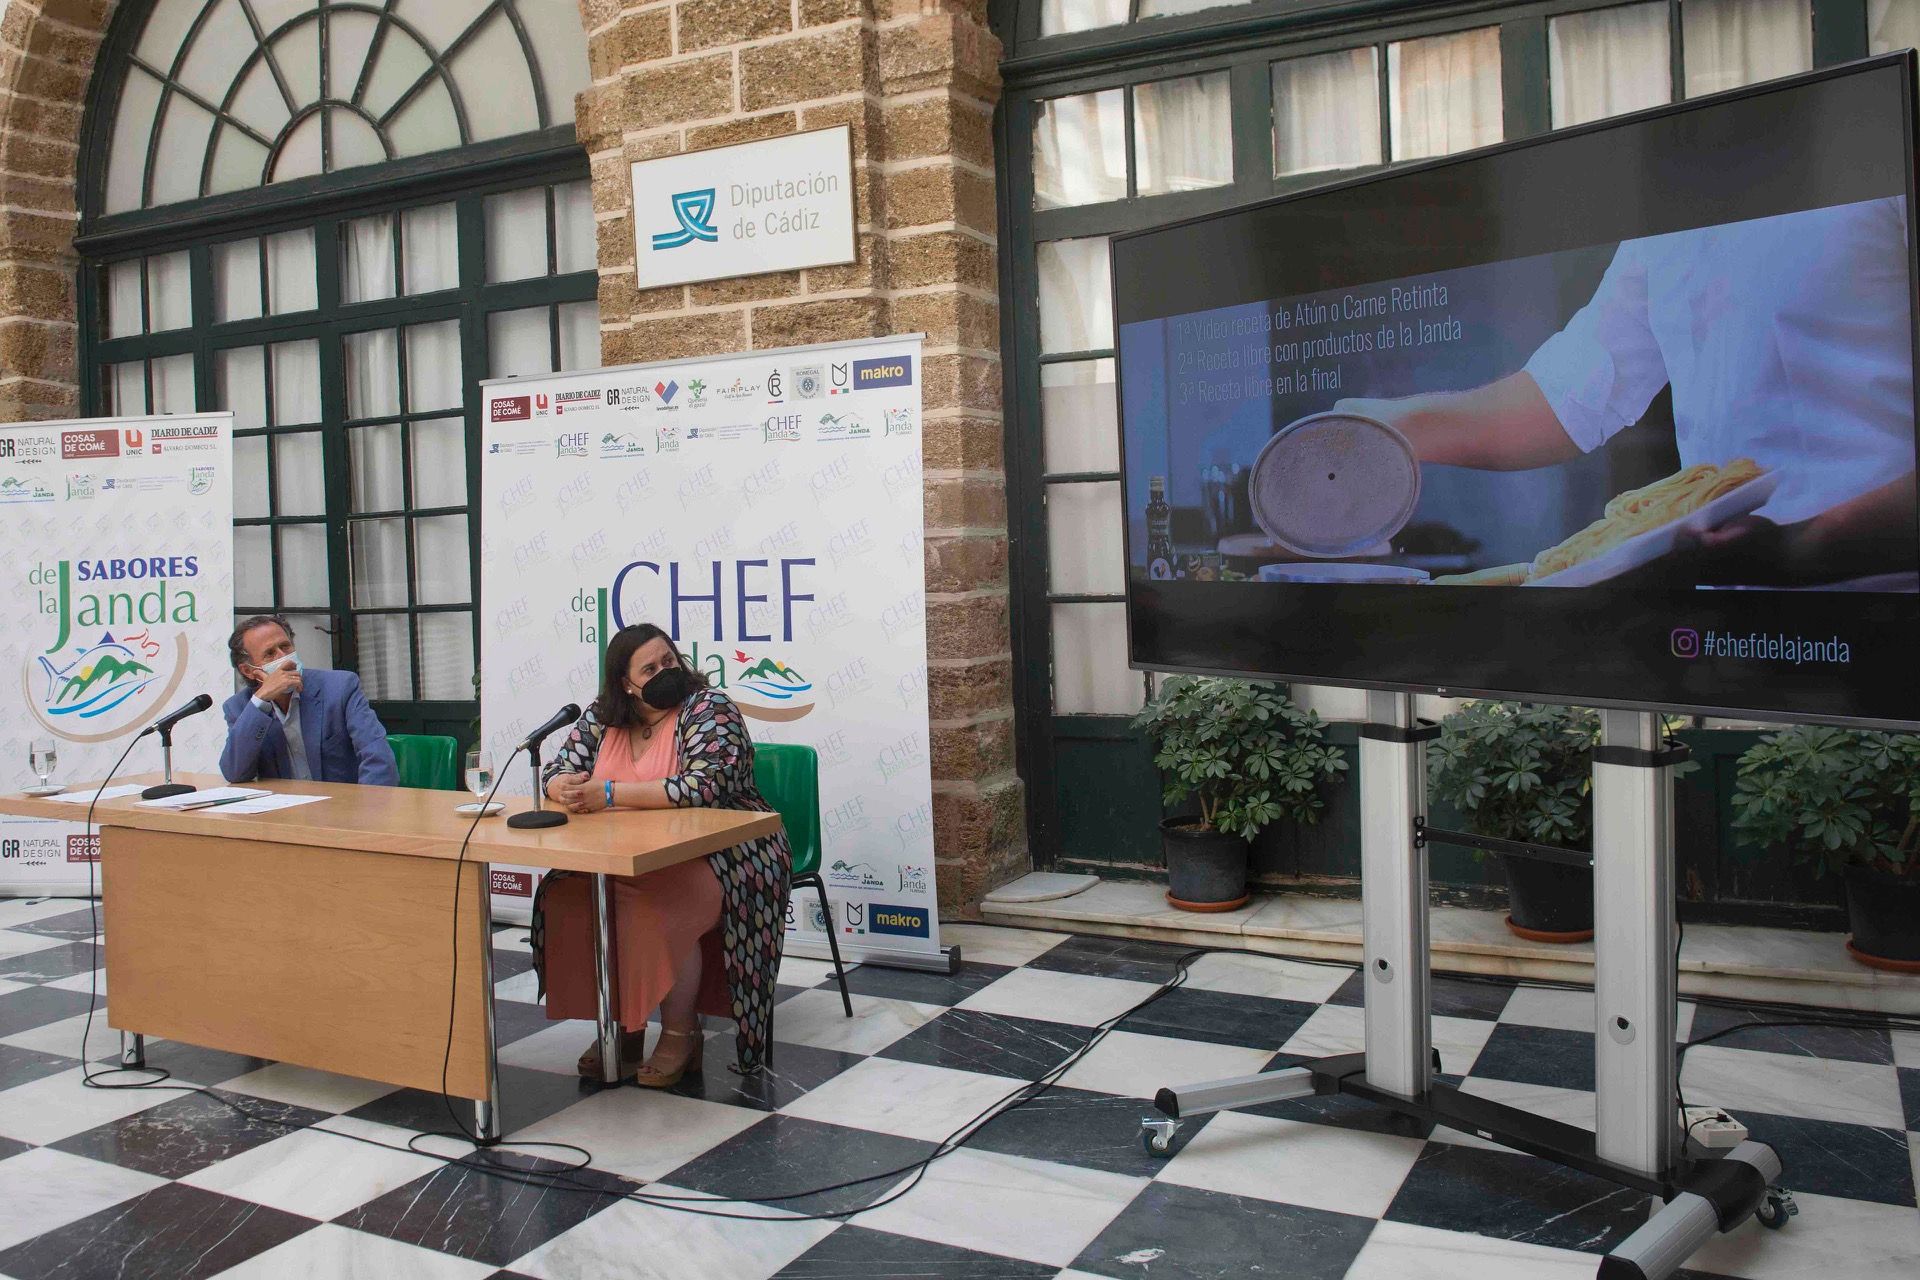 El vicepresidente de Diputación, José María Román, con la presidenta de la Mancomunidad, María de los Santos Sevillano, presentando el concurso Chef de la Janda.